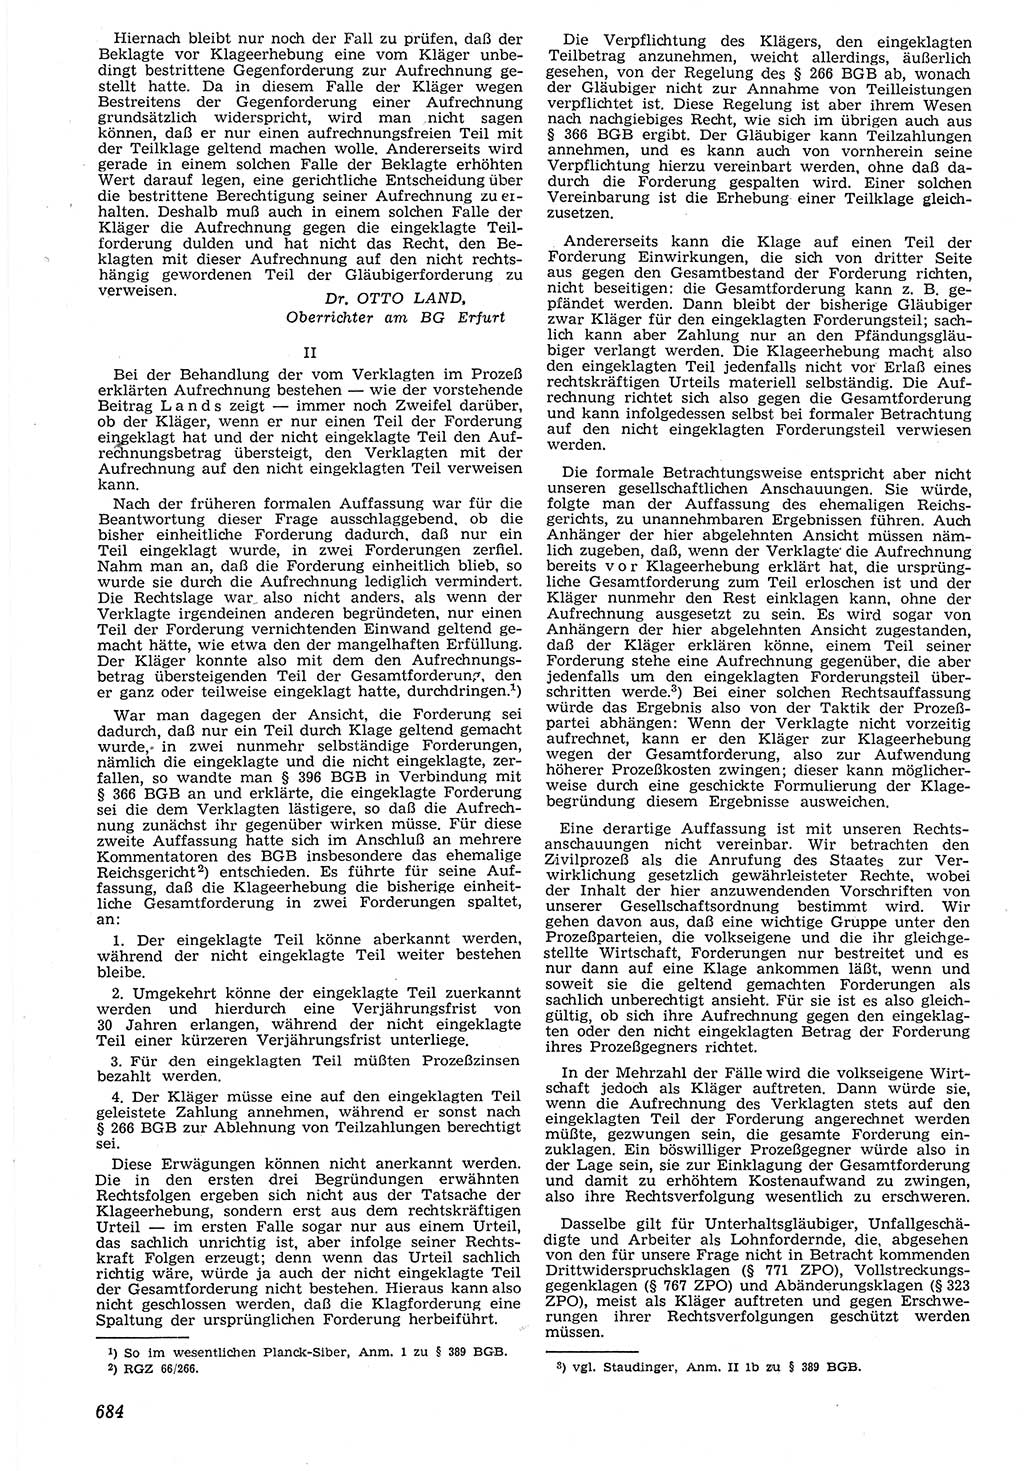 Neue Justiz (NJ), Zeitschrift für Recht und Rechtswissenschaft [Deutsche Demokratische Republik (DDR)], 7. Jahrgang 1953, Seite 684 (NJ DDR 1953, S. 684)